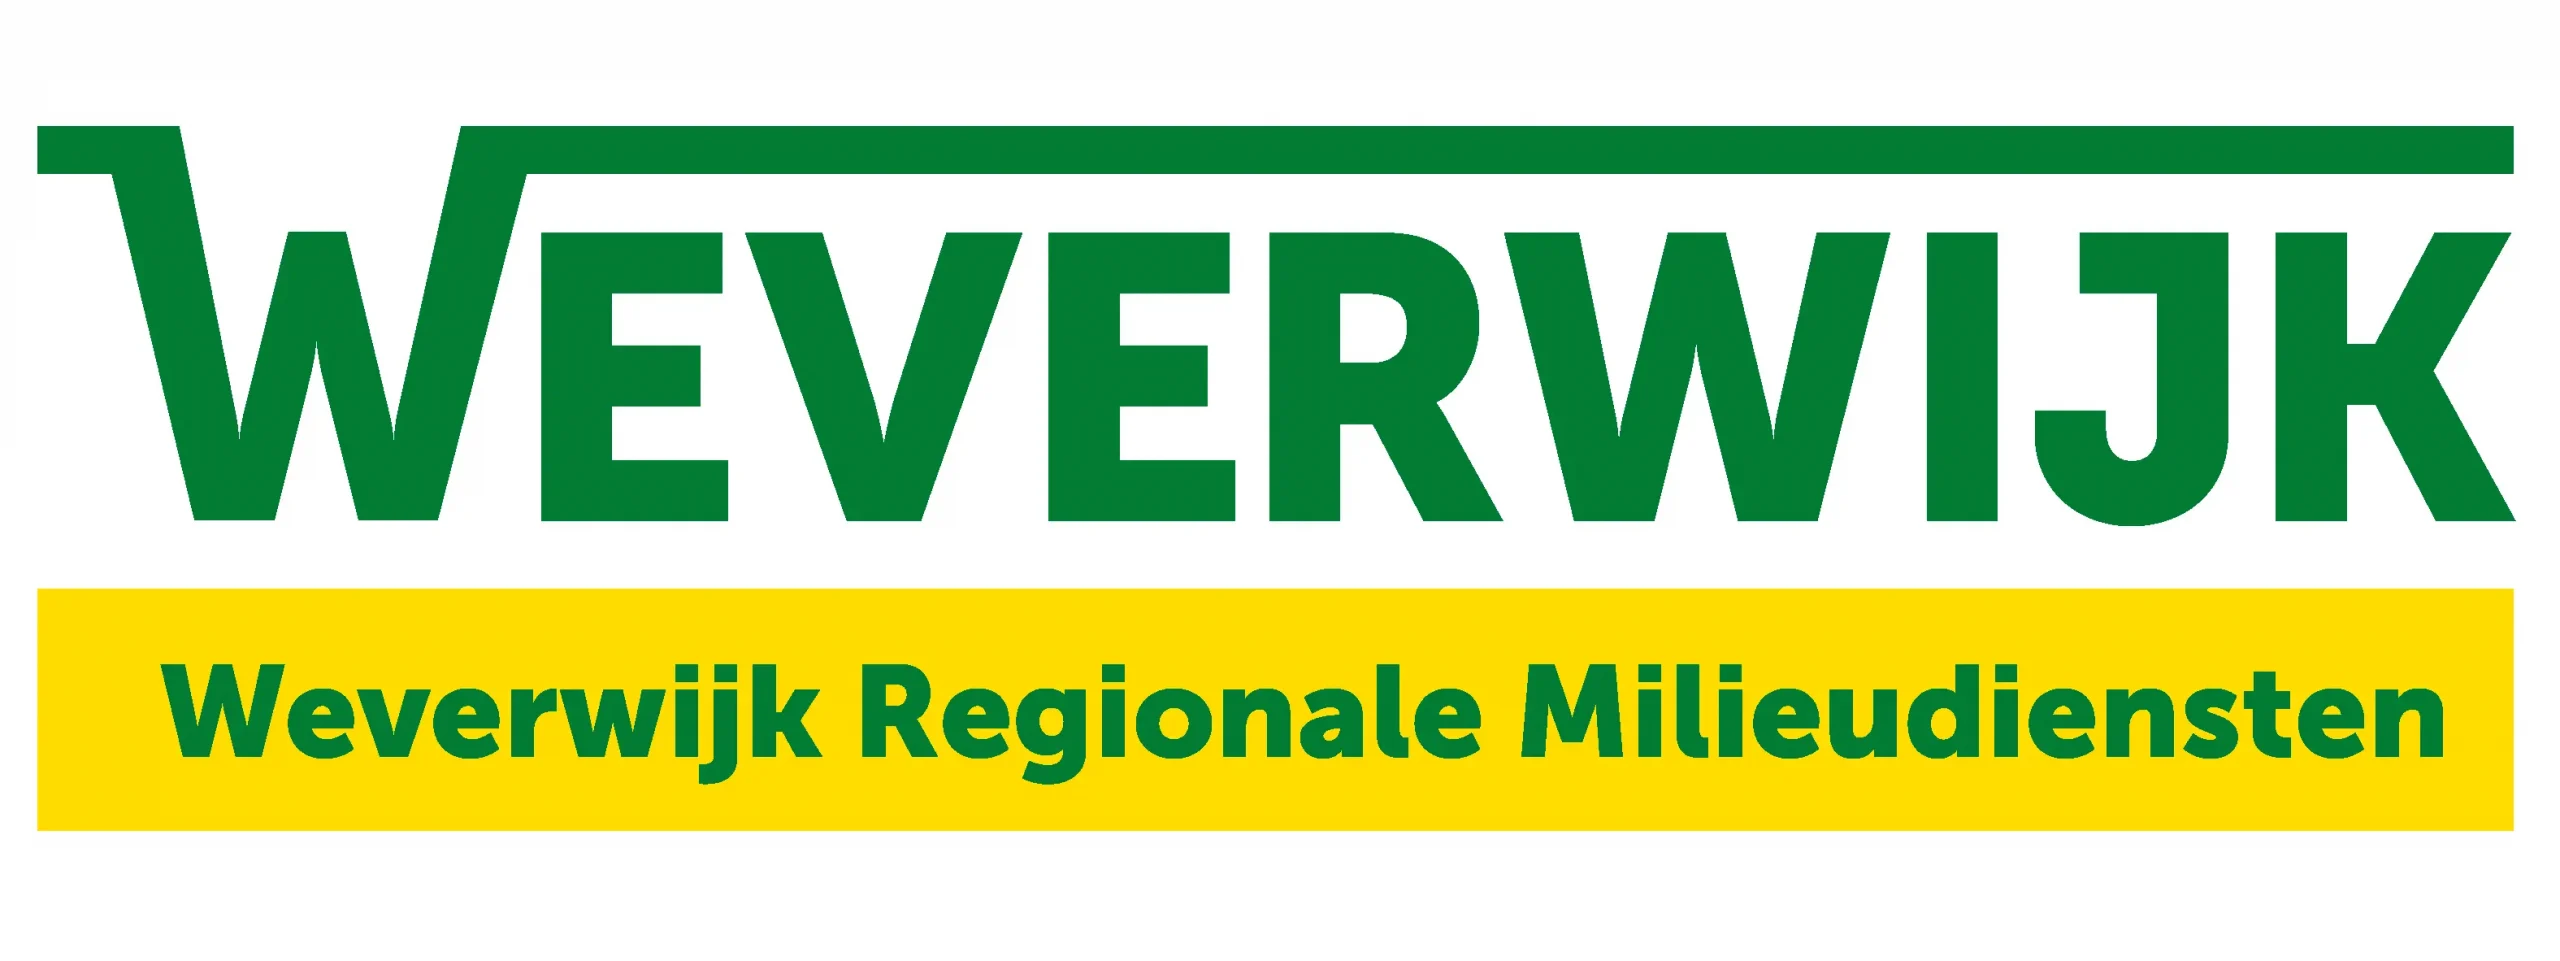 Weverwijk Regionale Milieudiensten